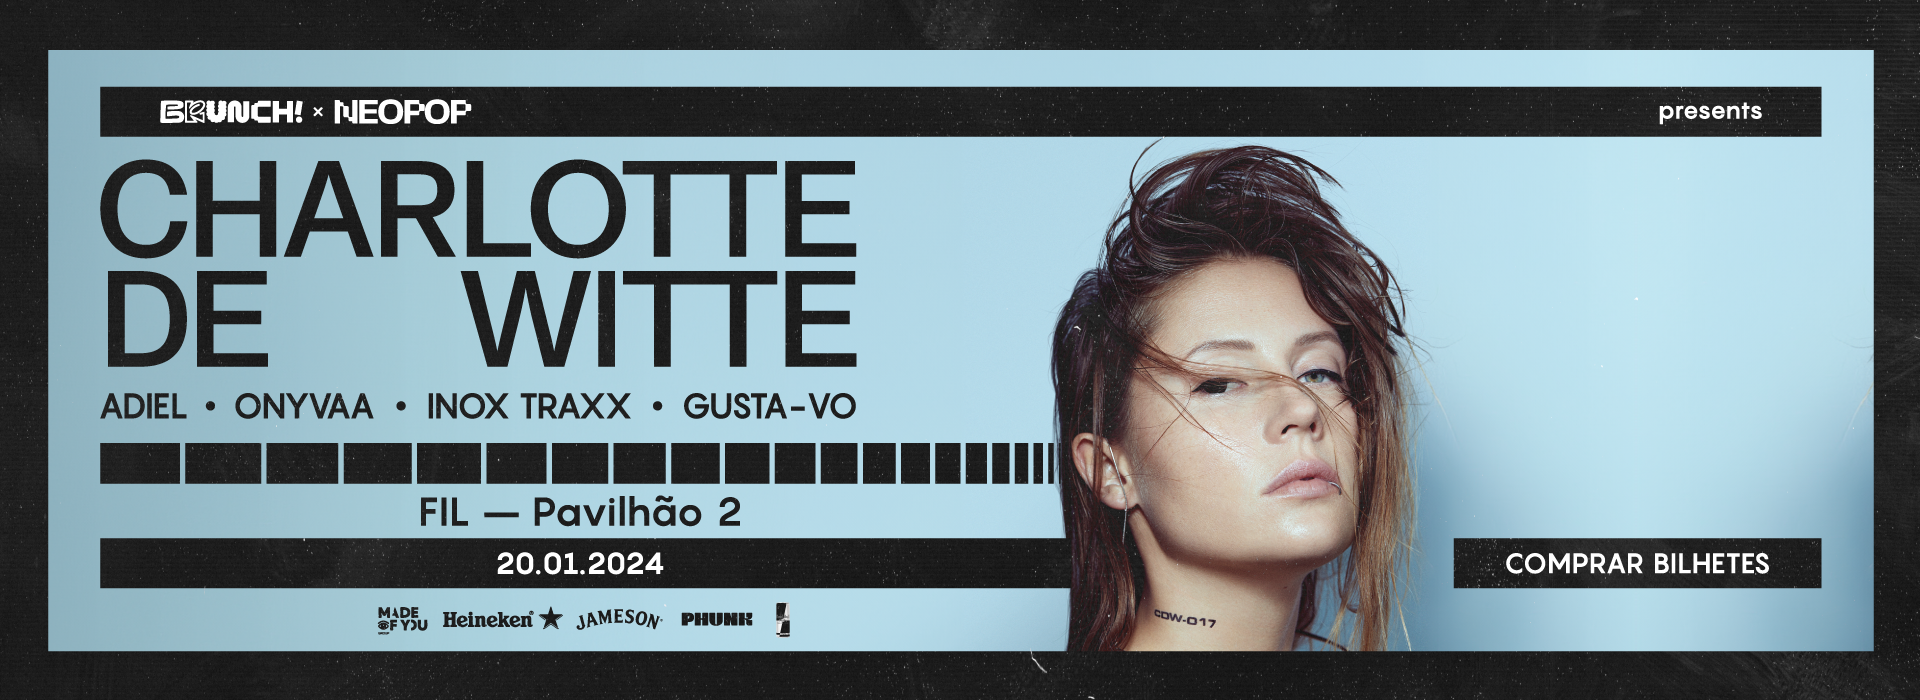 Brunch Electronik Lisboa X Neopop Festival presents Charlotte de Witte + TBA